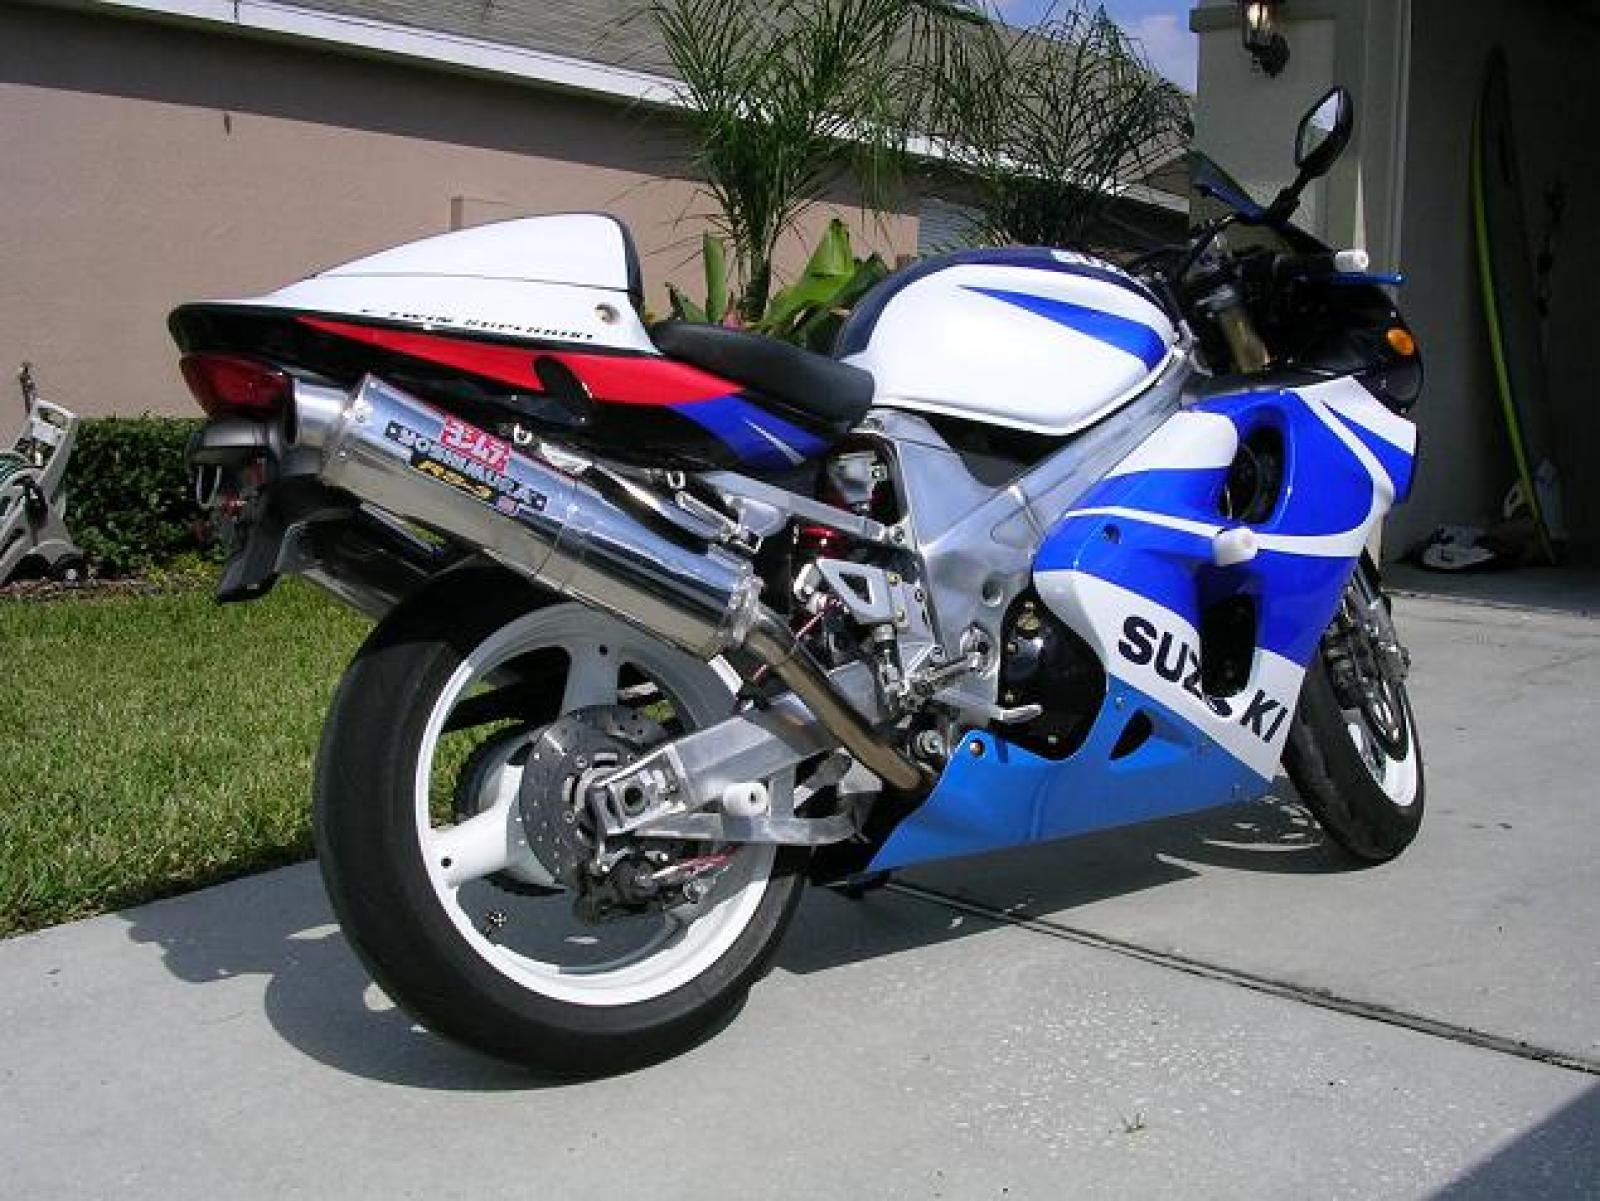 Тест-драйв мотоцикла Suzuki TL1000R